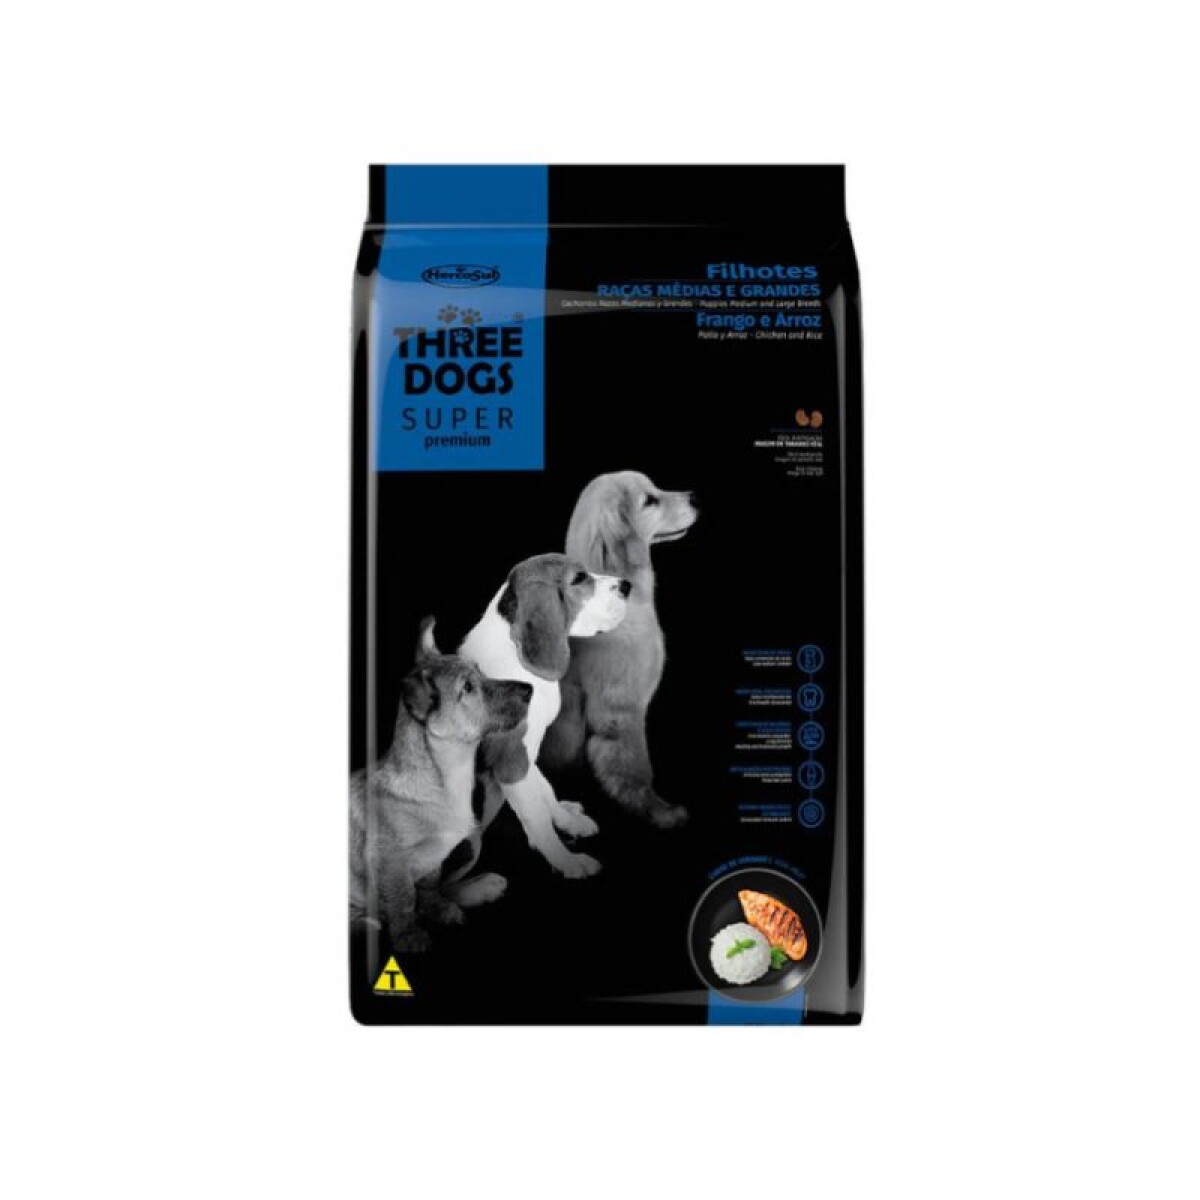 THREE DOGS SUPER PREMIUM FILHOTES MED/GDES 17 KG - Three Dogs Super Premium Filhotes Med/gdes 17 Kg 